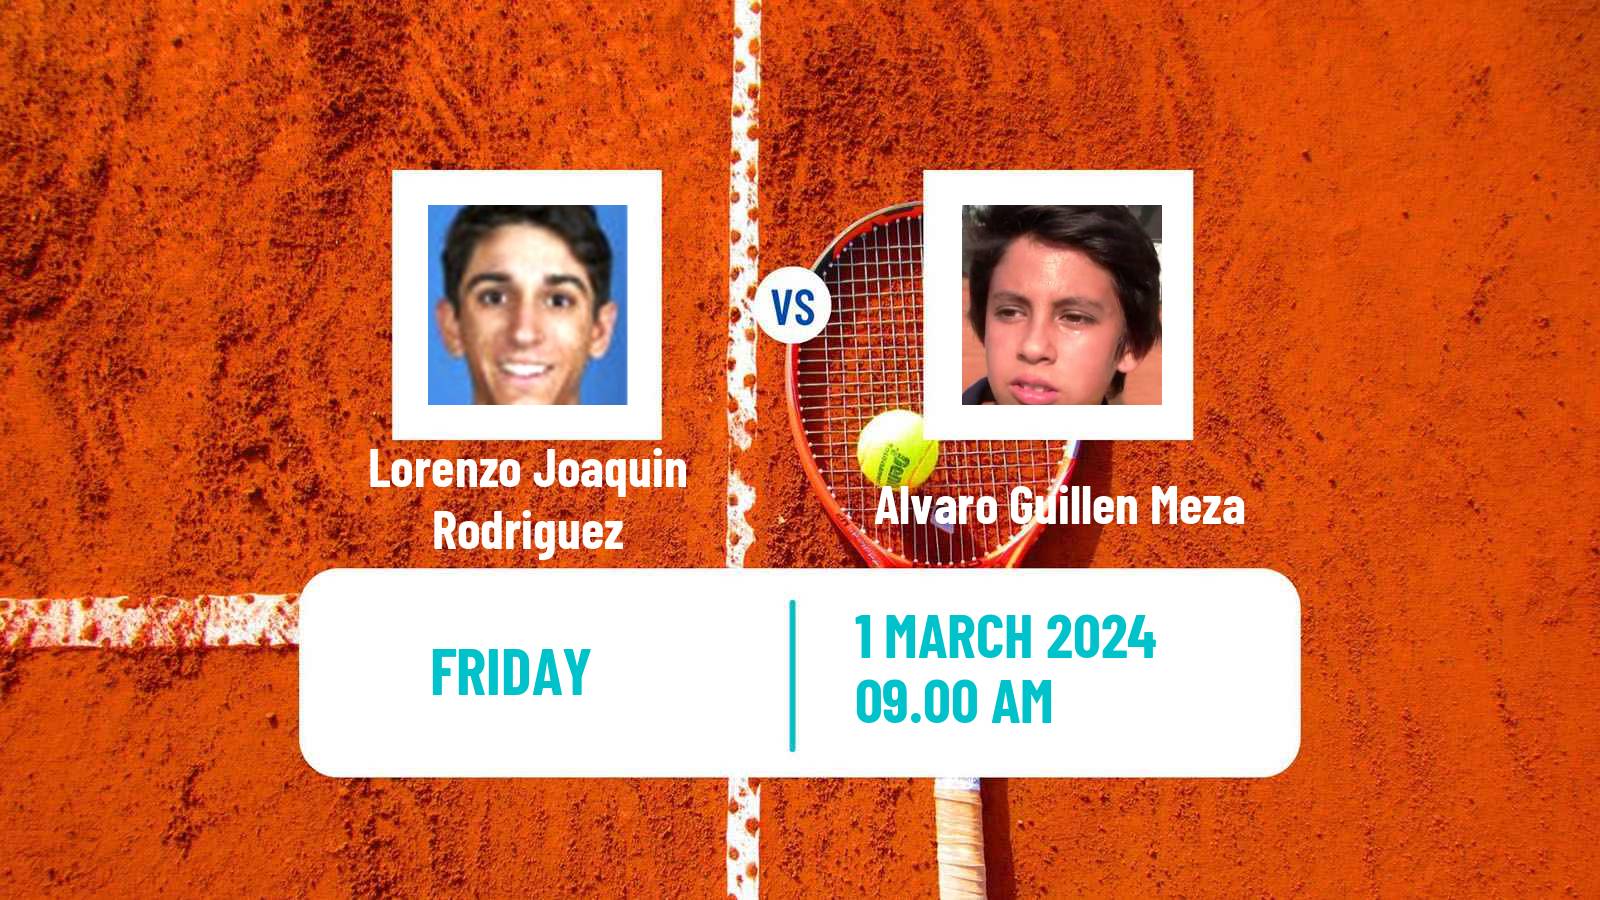 Tennis ITF M25 Tucuman Men Lorenzo Joaquin Rodriguez - Alvaro Guillen Meza